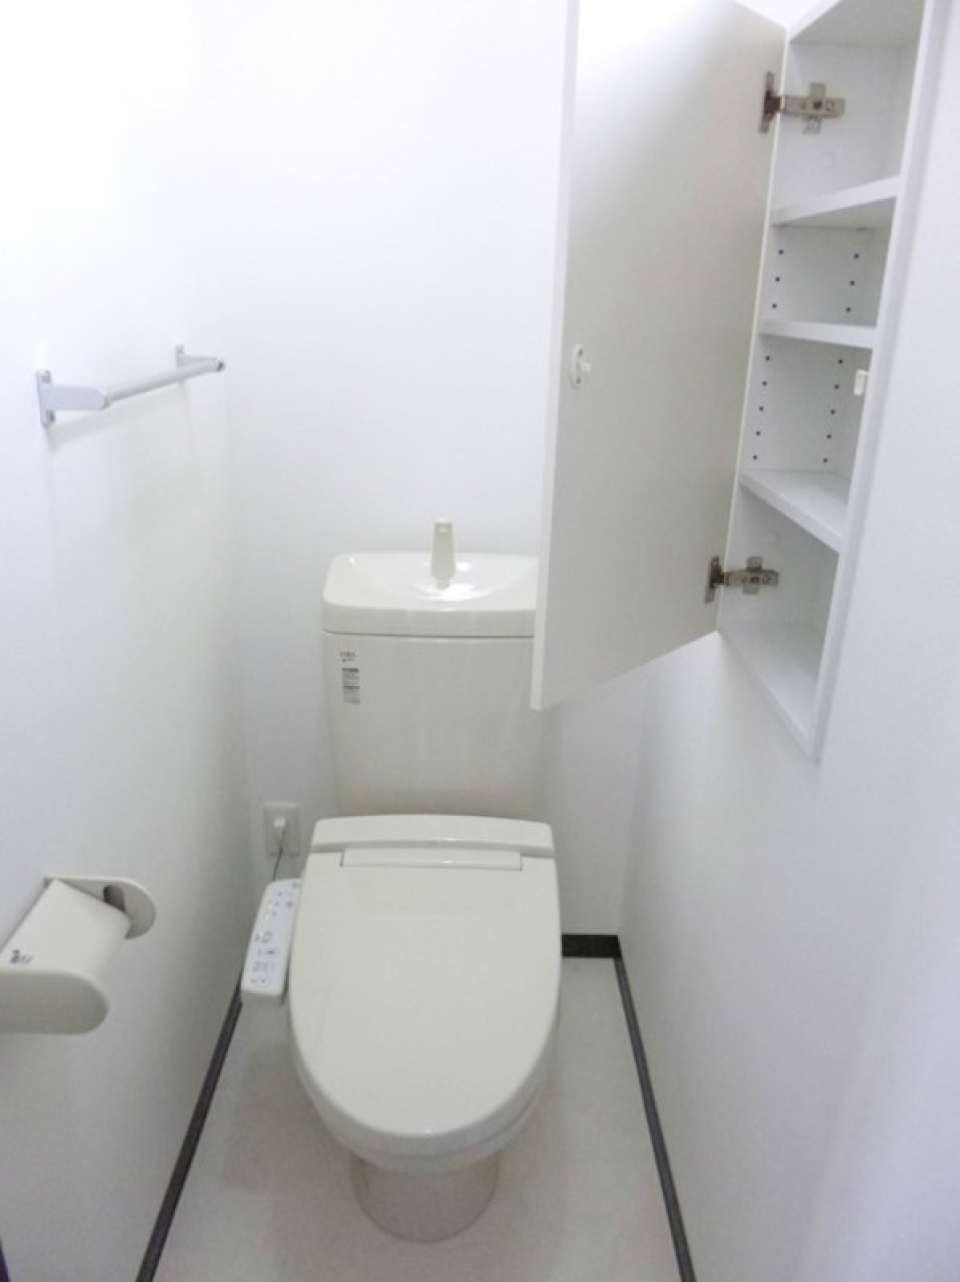 あると嬉しい収納スペースがトイレにも！
各階にトイレがあります